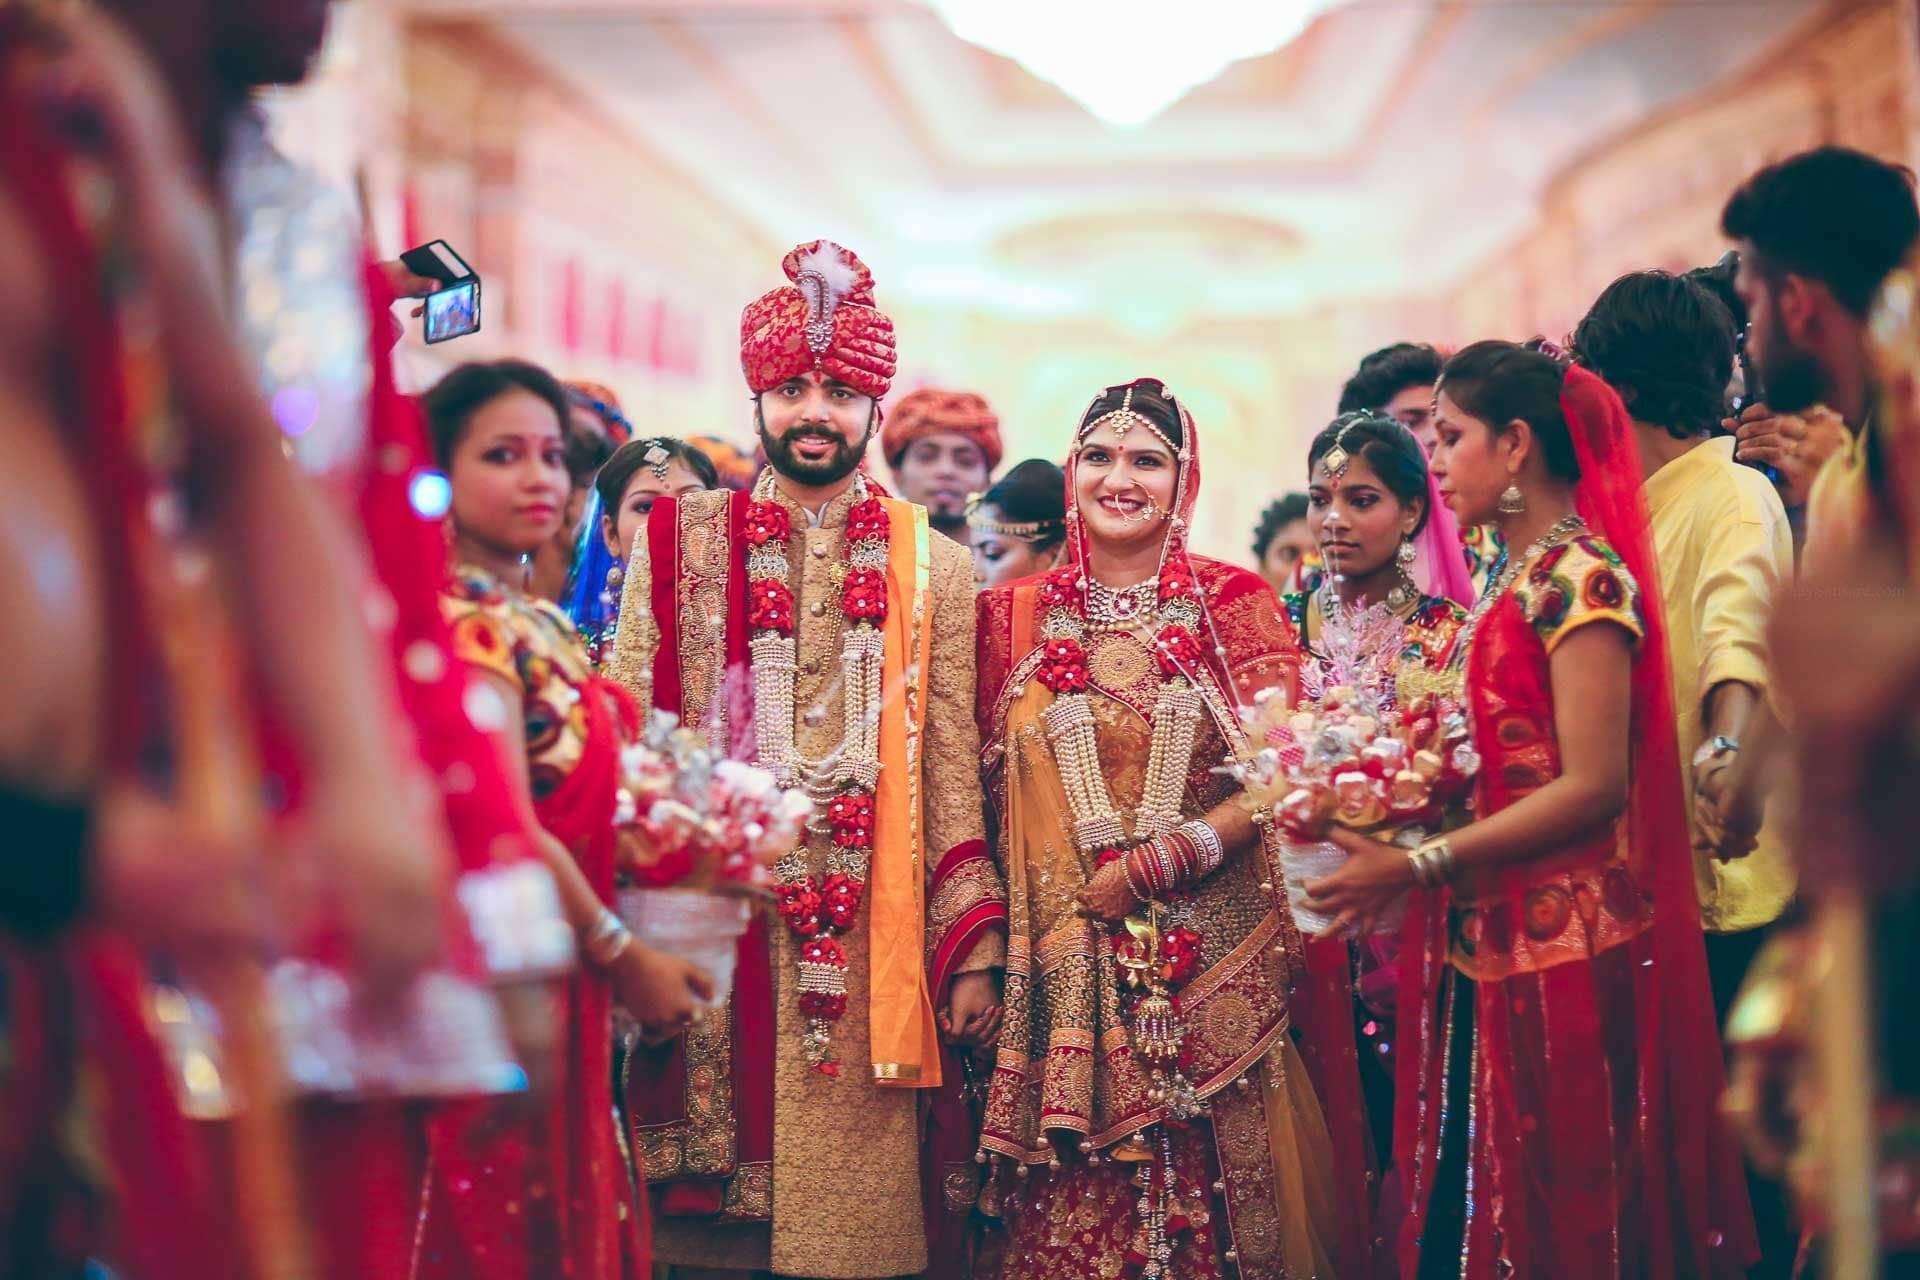 Колоритные фотографии индийской свадьбы, которая взбудоражила интернет